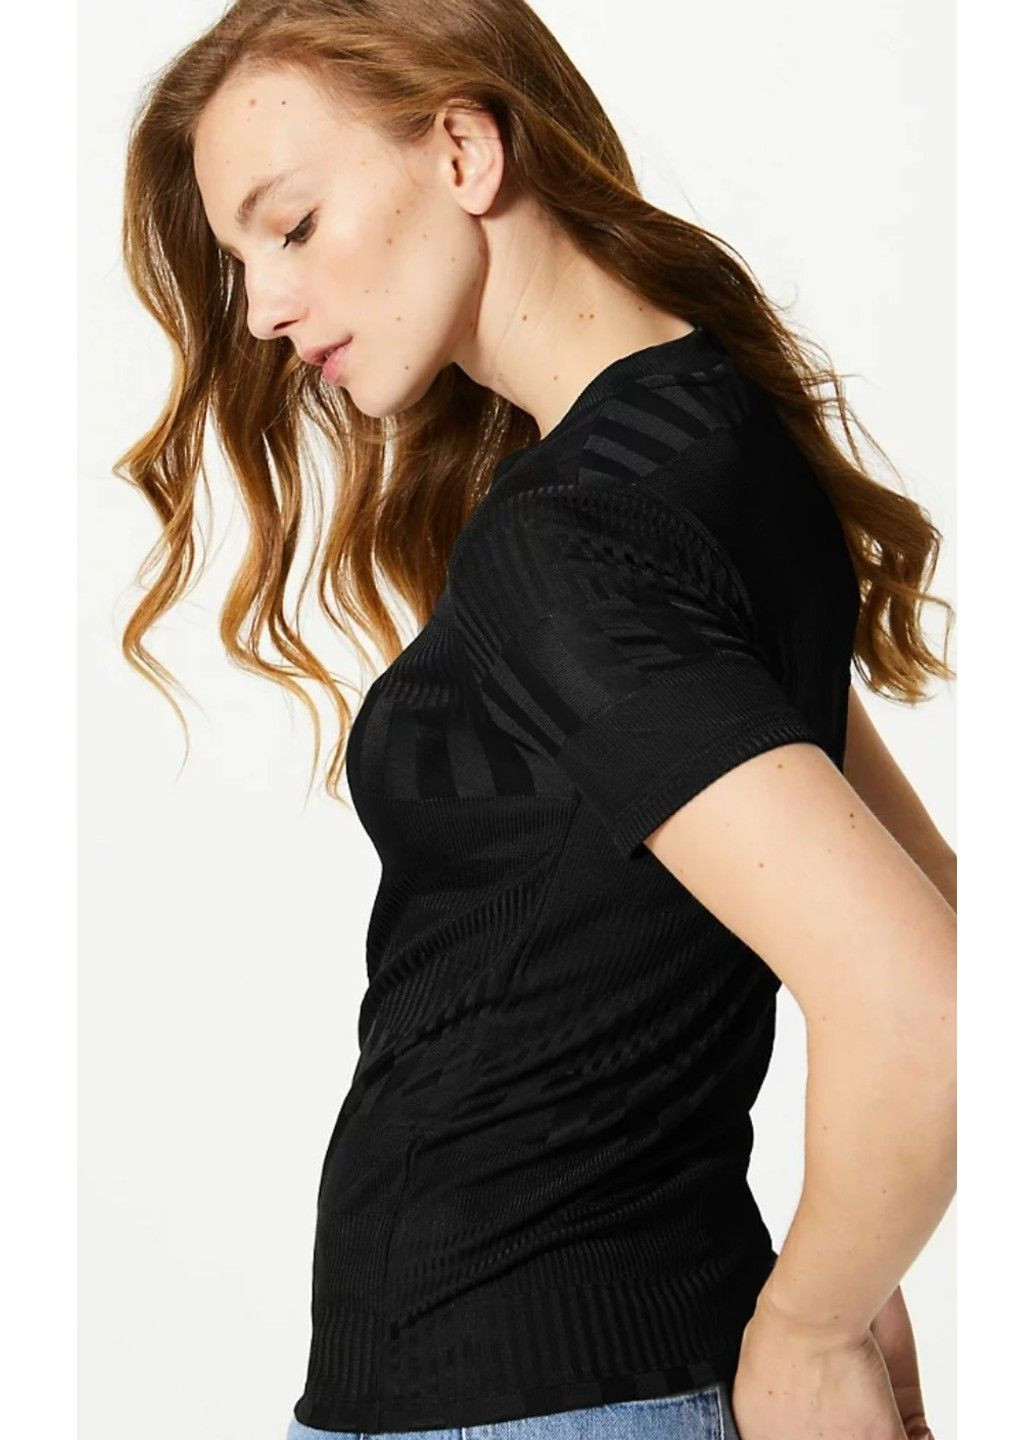 Черная всесезон женская приталенная футболка с круглым вырезом (56753) 18 черная M&S